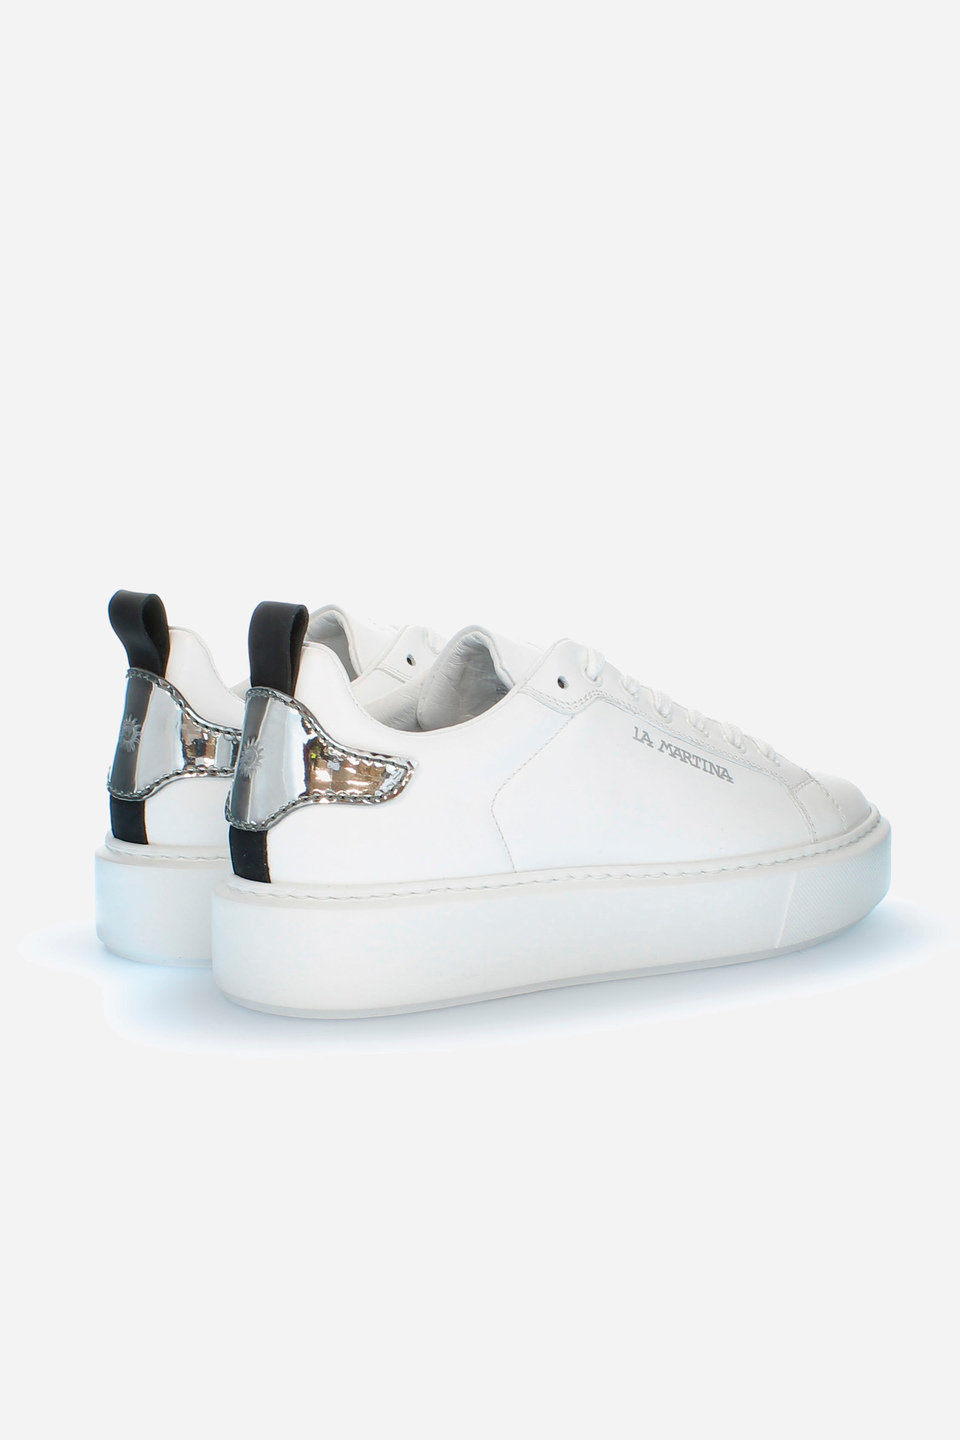 Women’s sneakers in calfskin | La Martina - Official Online Shop